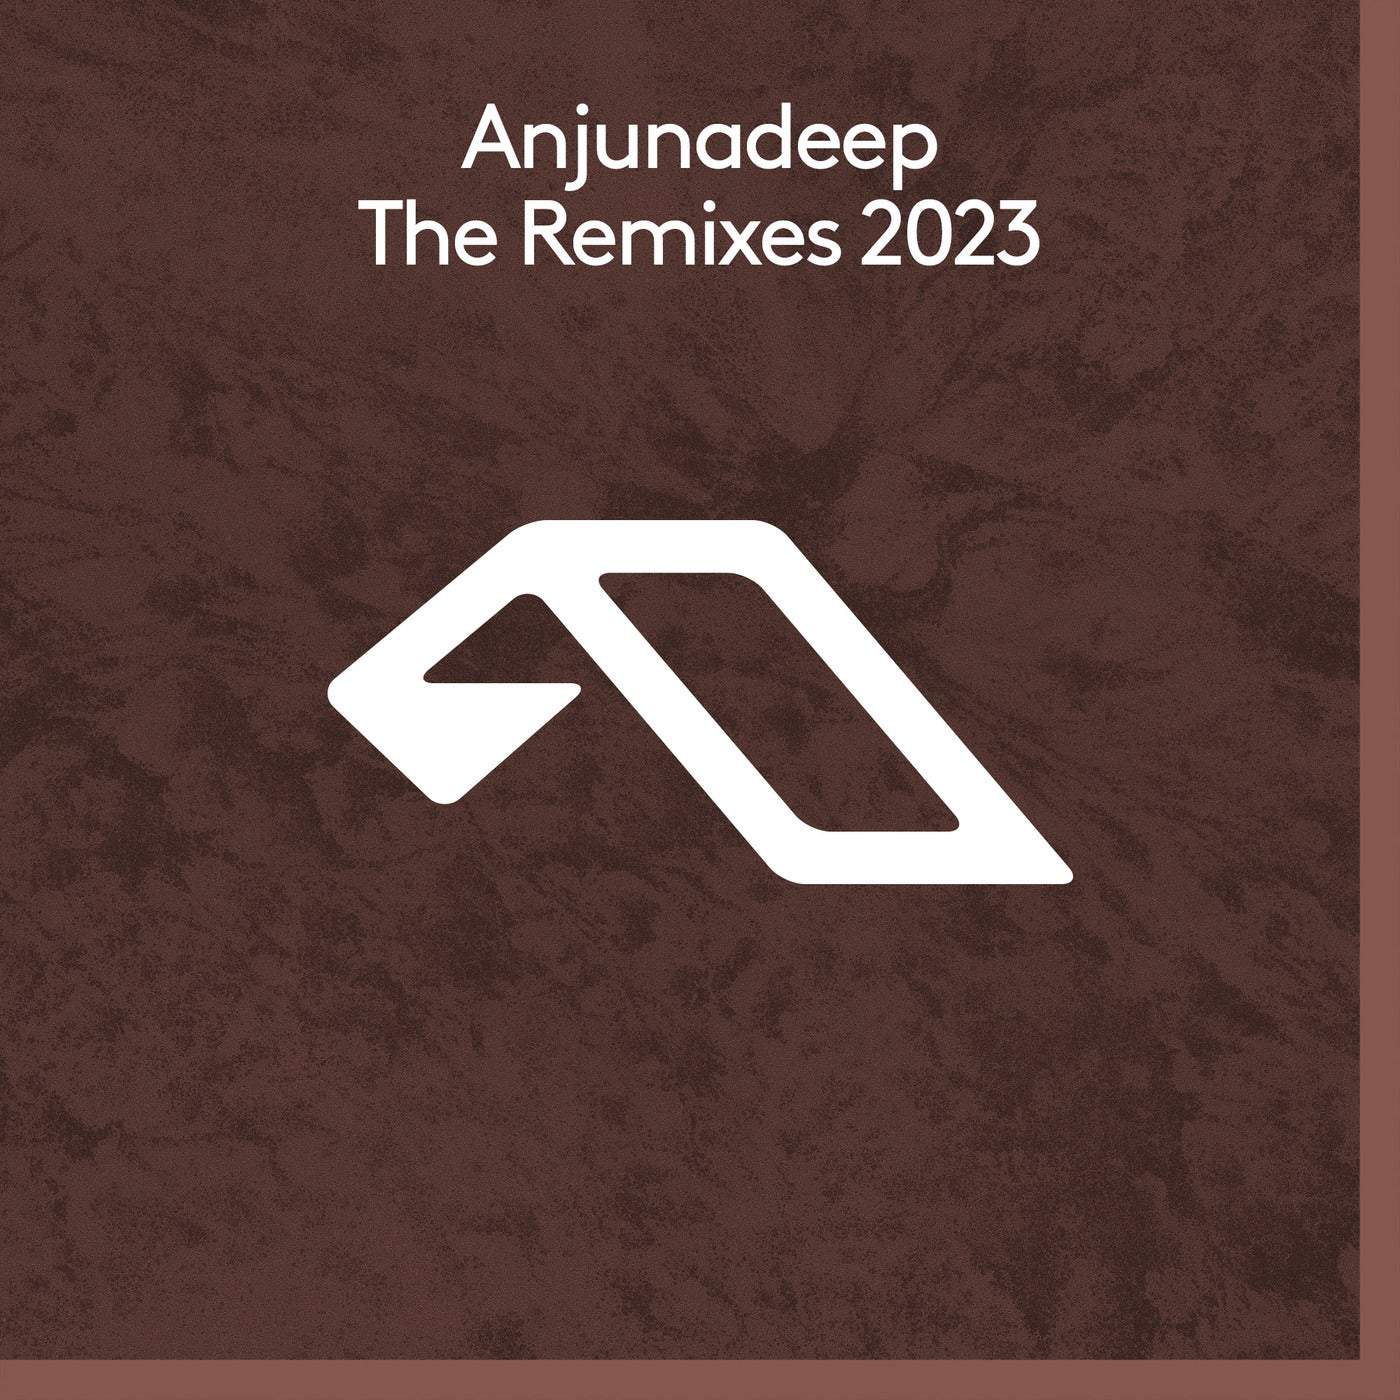 image cover: VA - Anjunadeep The Remixes 2023 on Anjunadeep